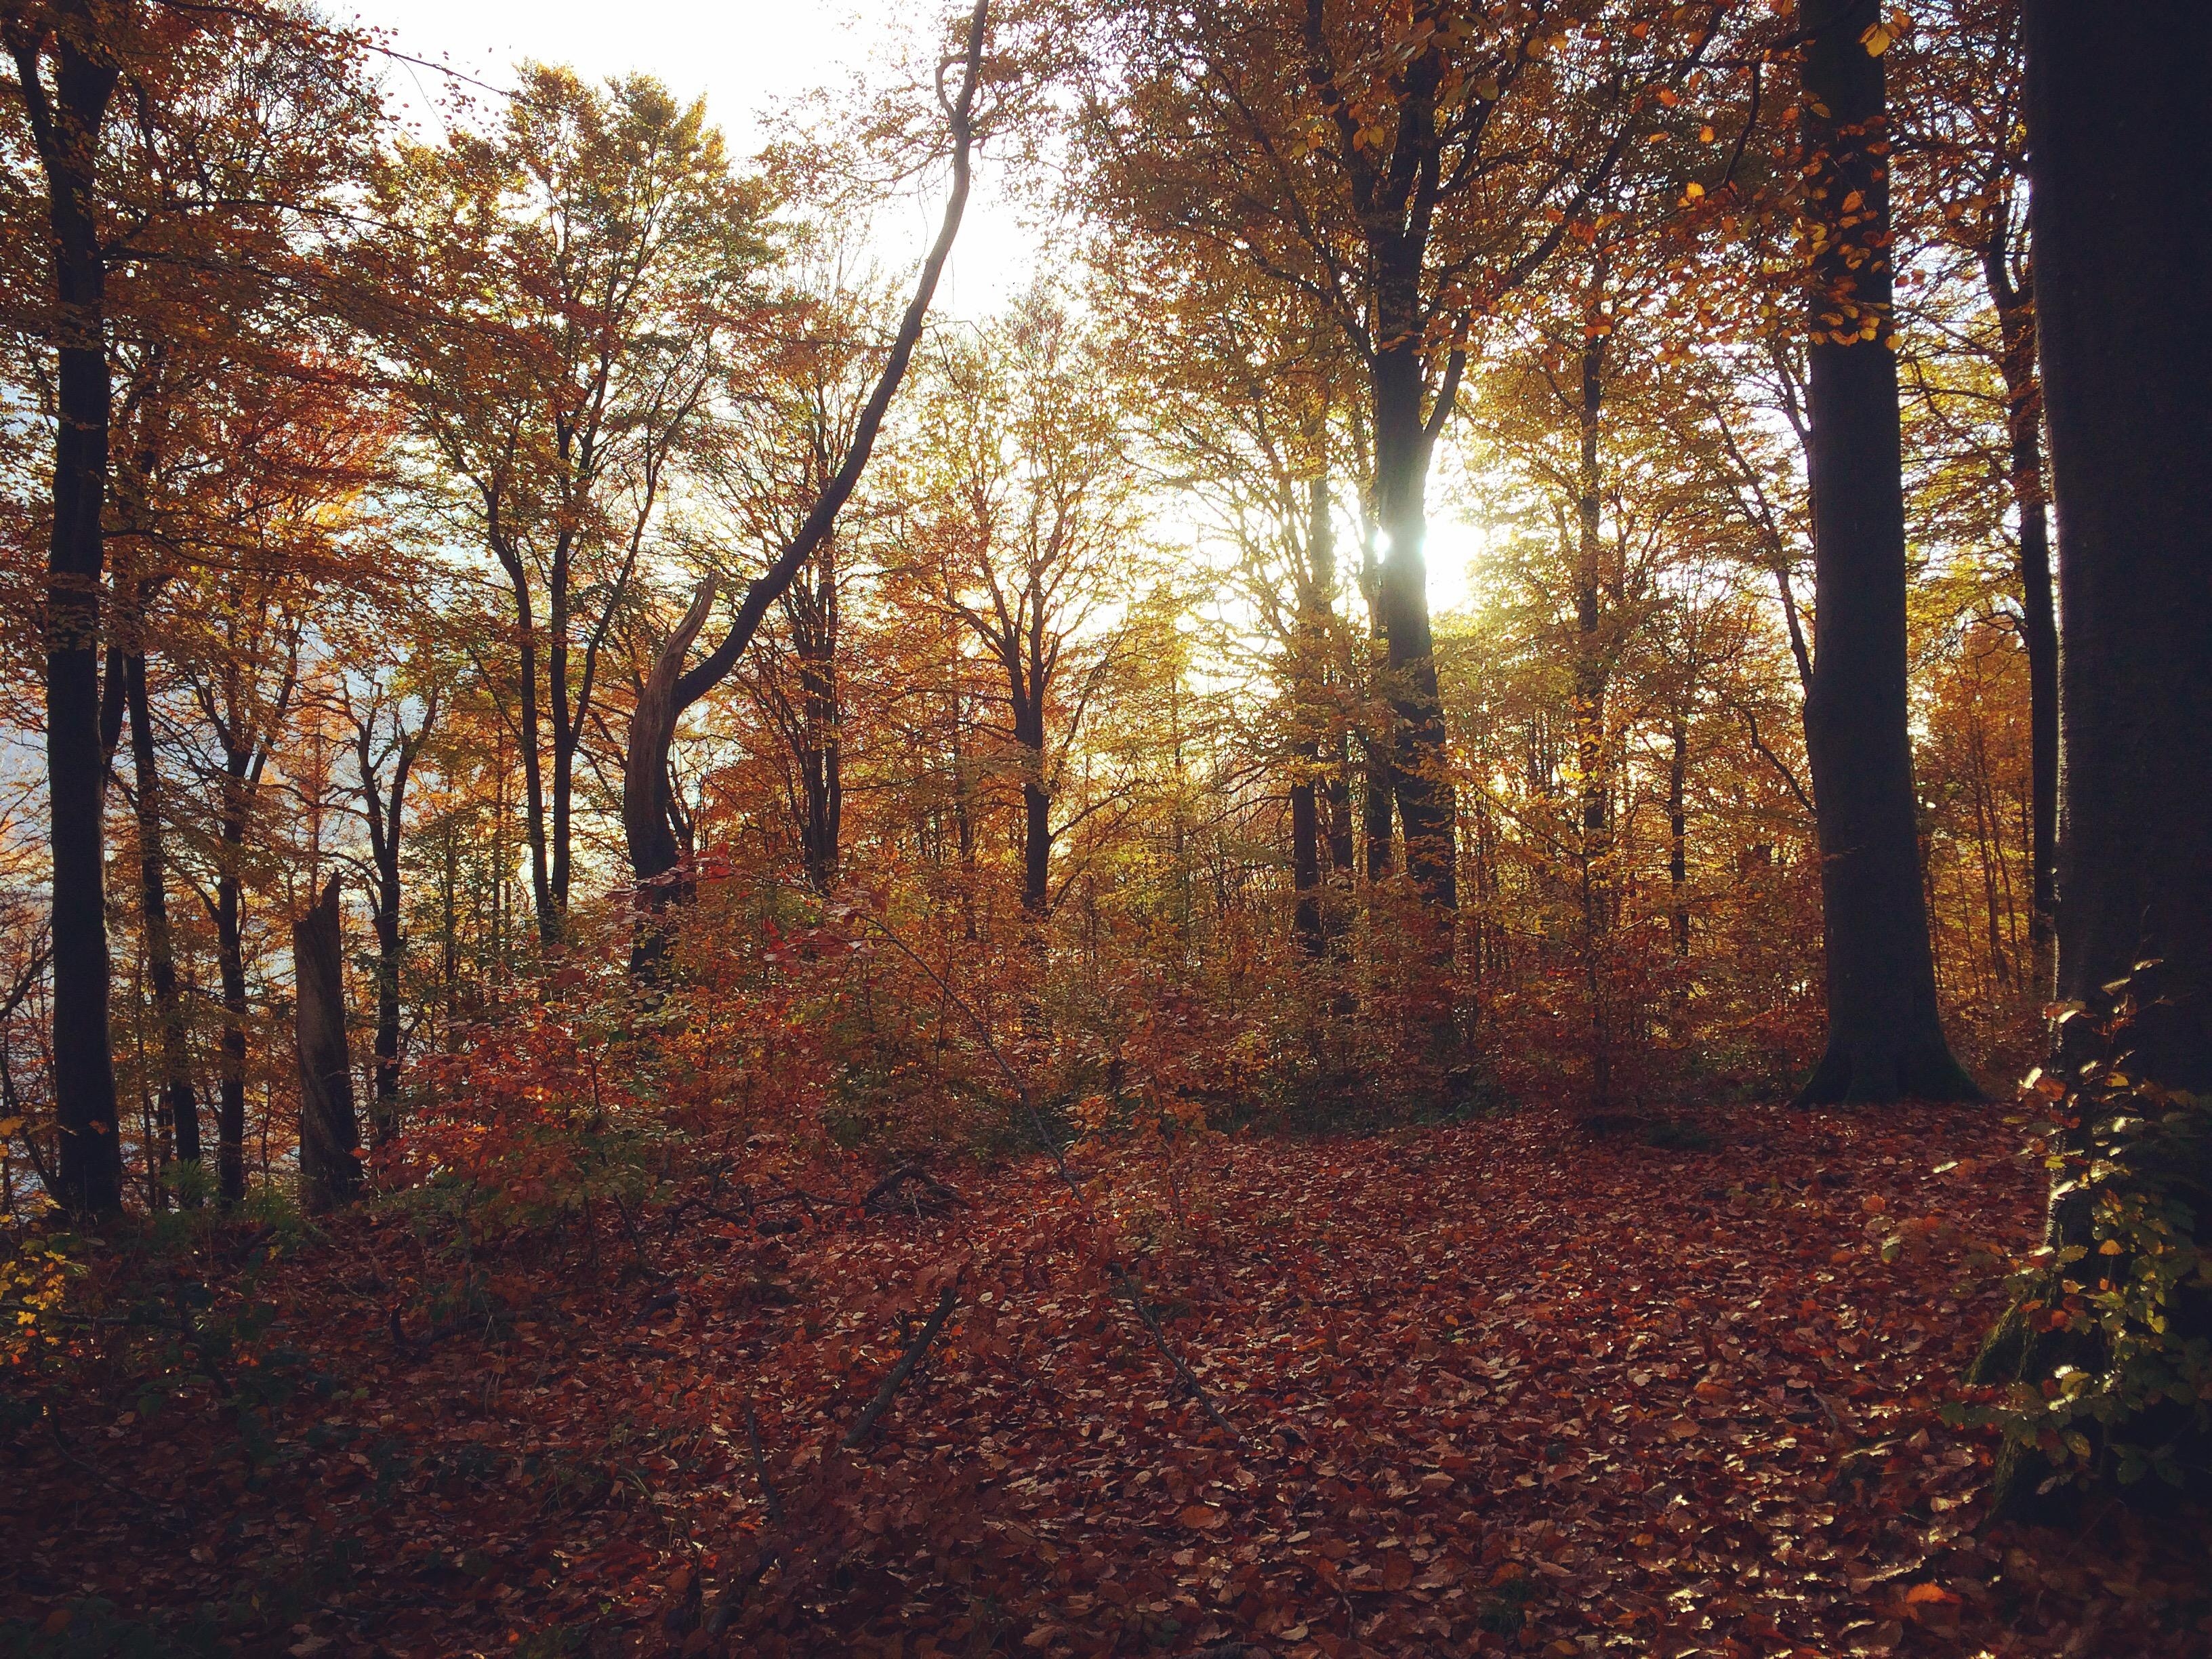 Golden hour.
#autumnsun #waldspaziergang #kollundskov #danmark